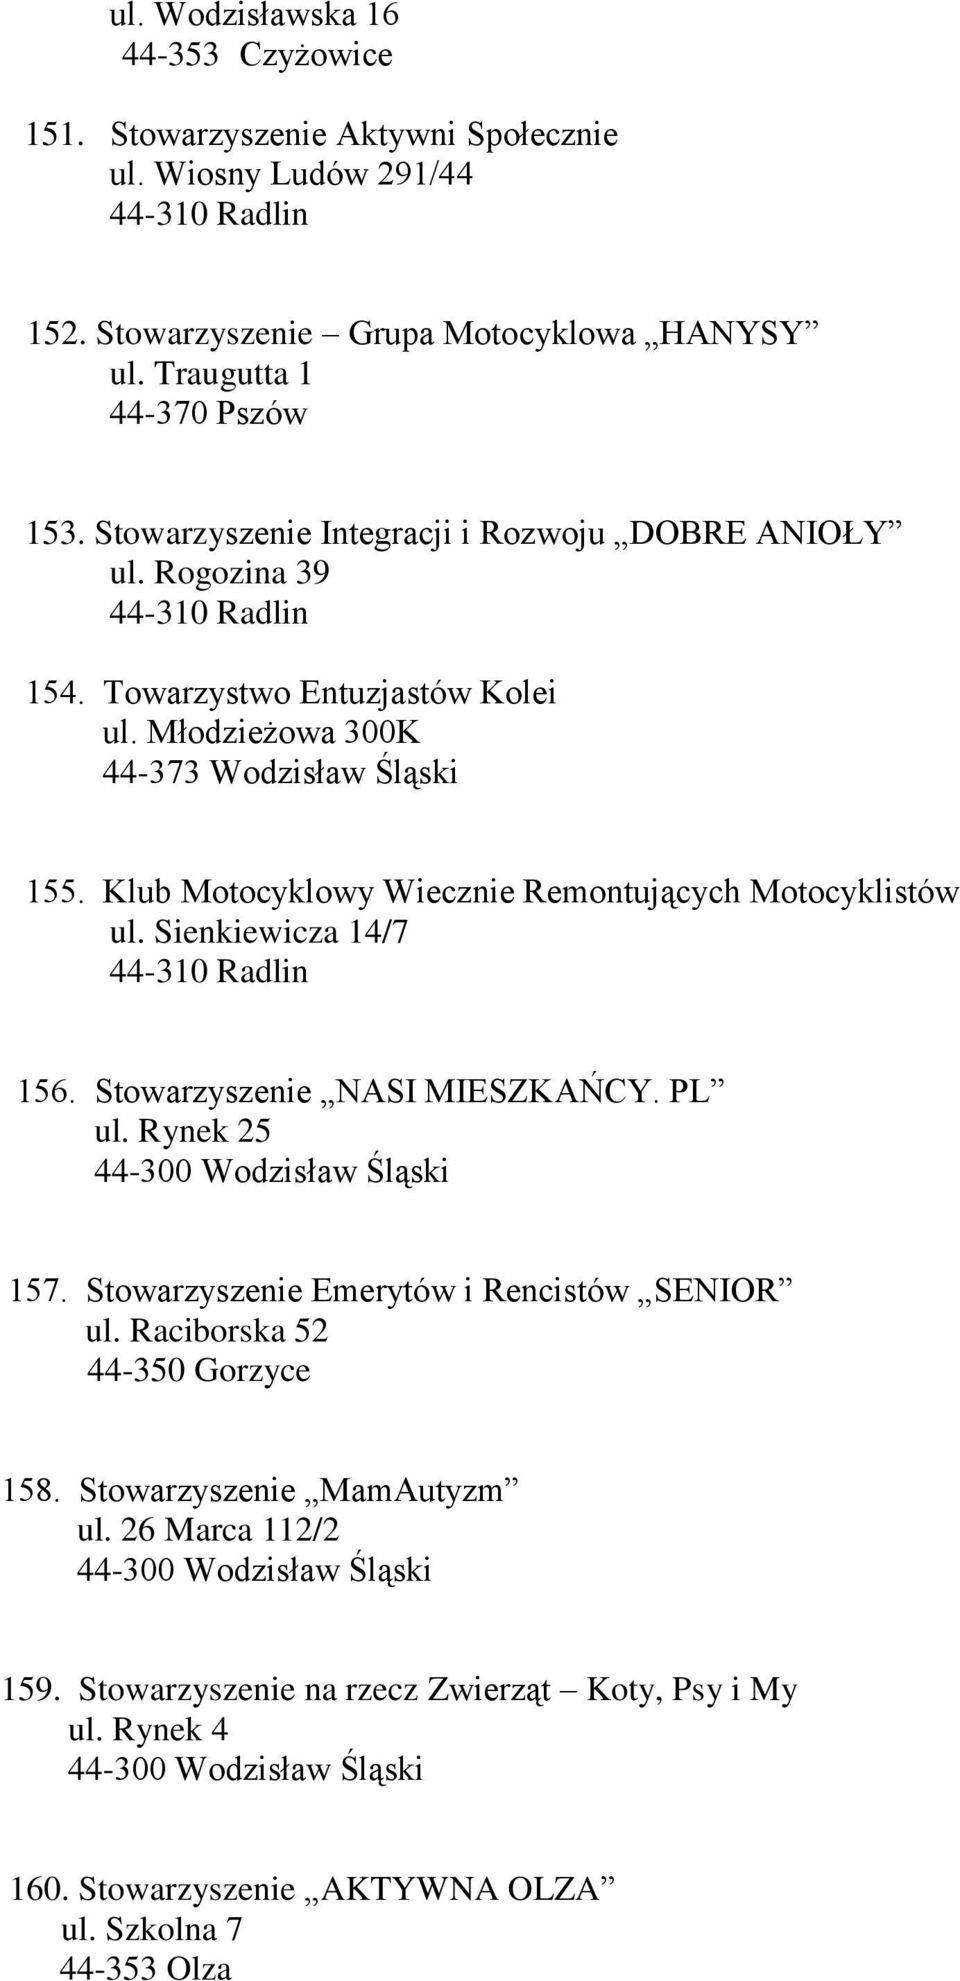 Klub Motocyklowy Wiecznie Remontujących Motocyklistów ul. Sienkiewicza 14/7 156. Stowarzyszenie NASI MIESZKAŃCY. PL ul. Rynek 25 157.